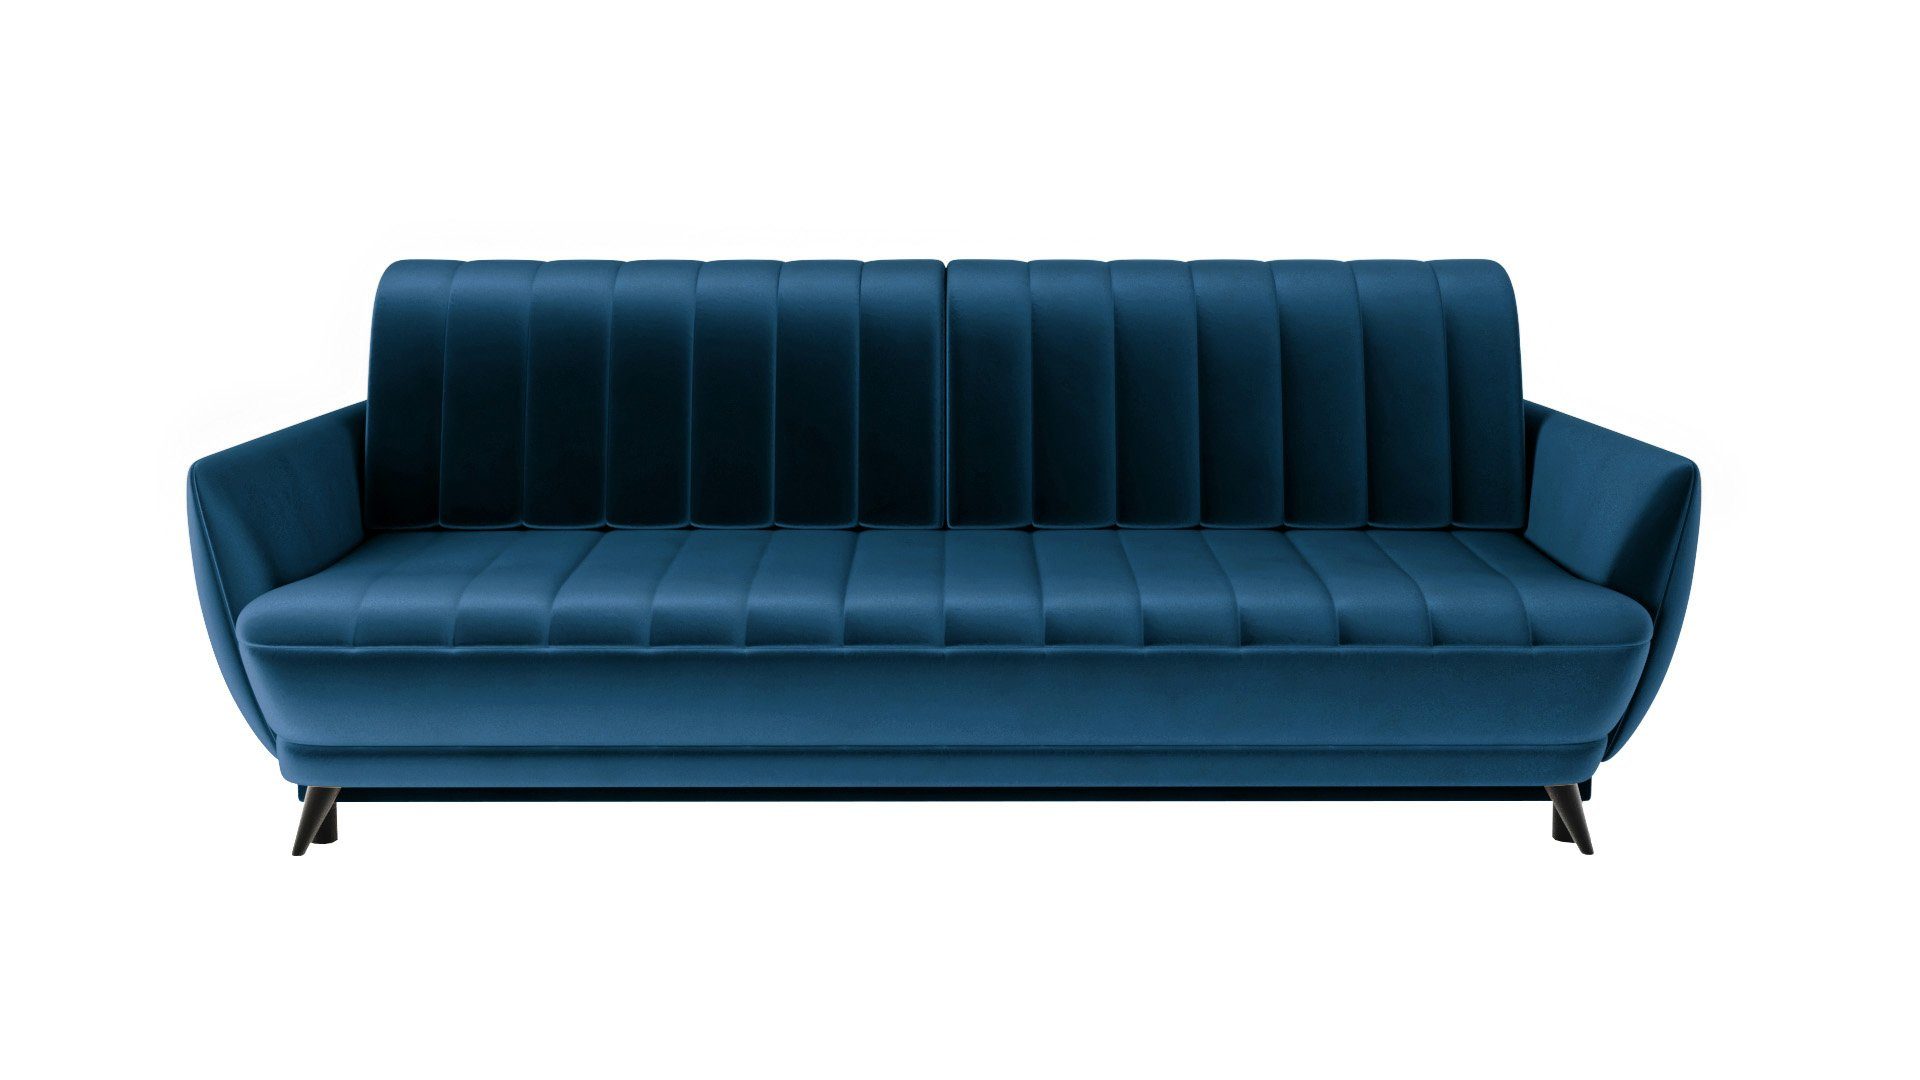 Siblo 3-Sitzer Dreisitziges Elegantes Sofa Rolo 3 - bequemes Sofa - 3-Sitzer Sofa - modernes Wohnzimmer Blau